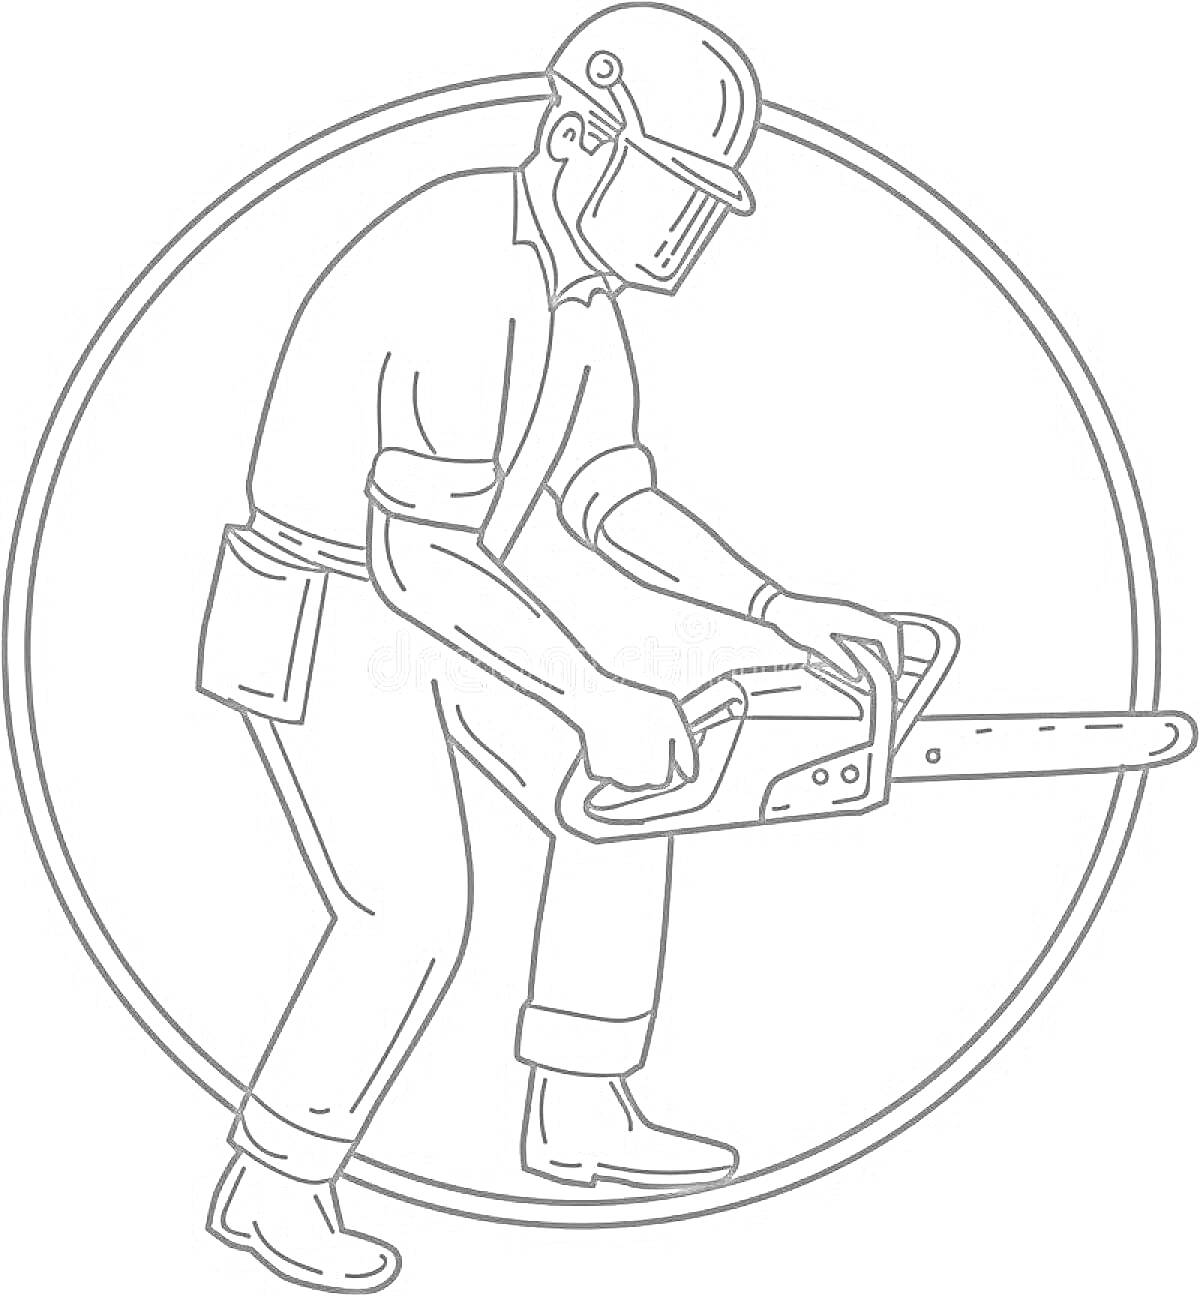 Человек в защитной каске и очках, работающий бензопилой внутри круга